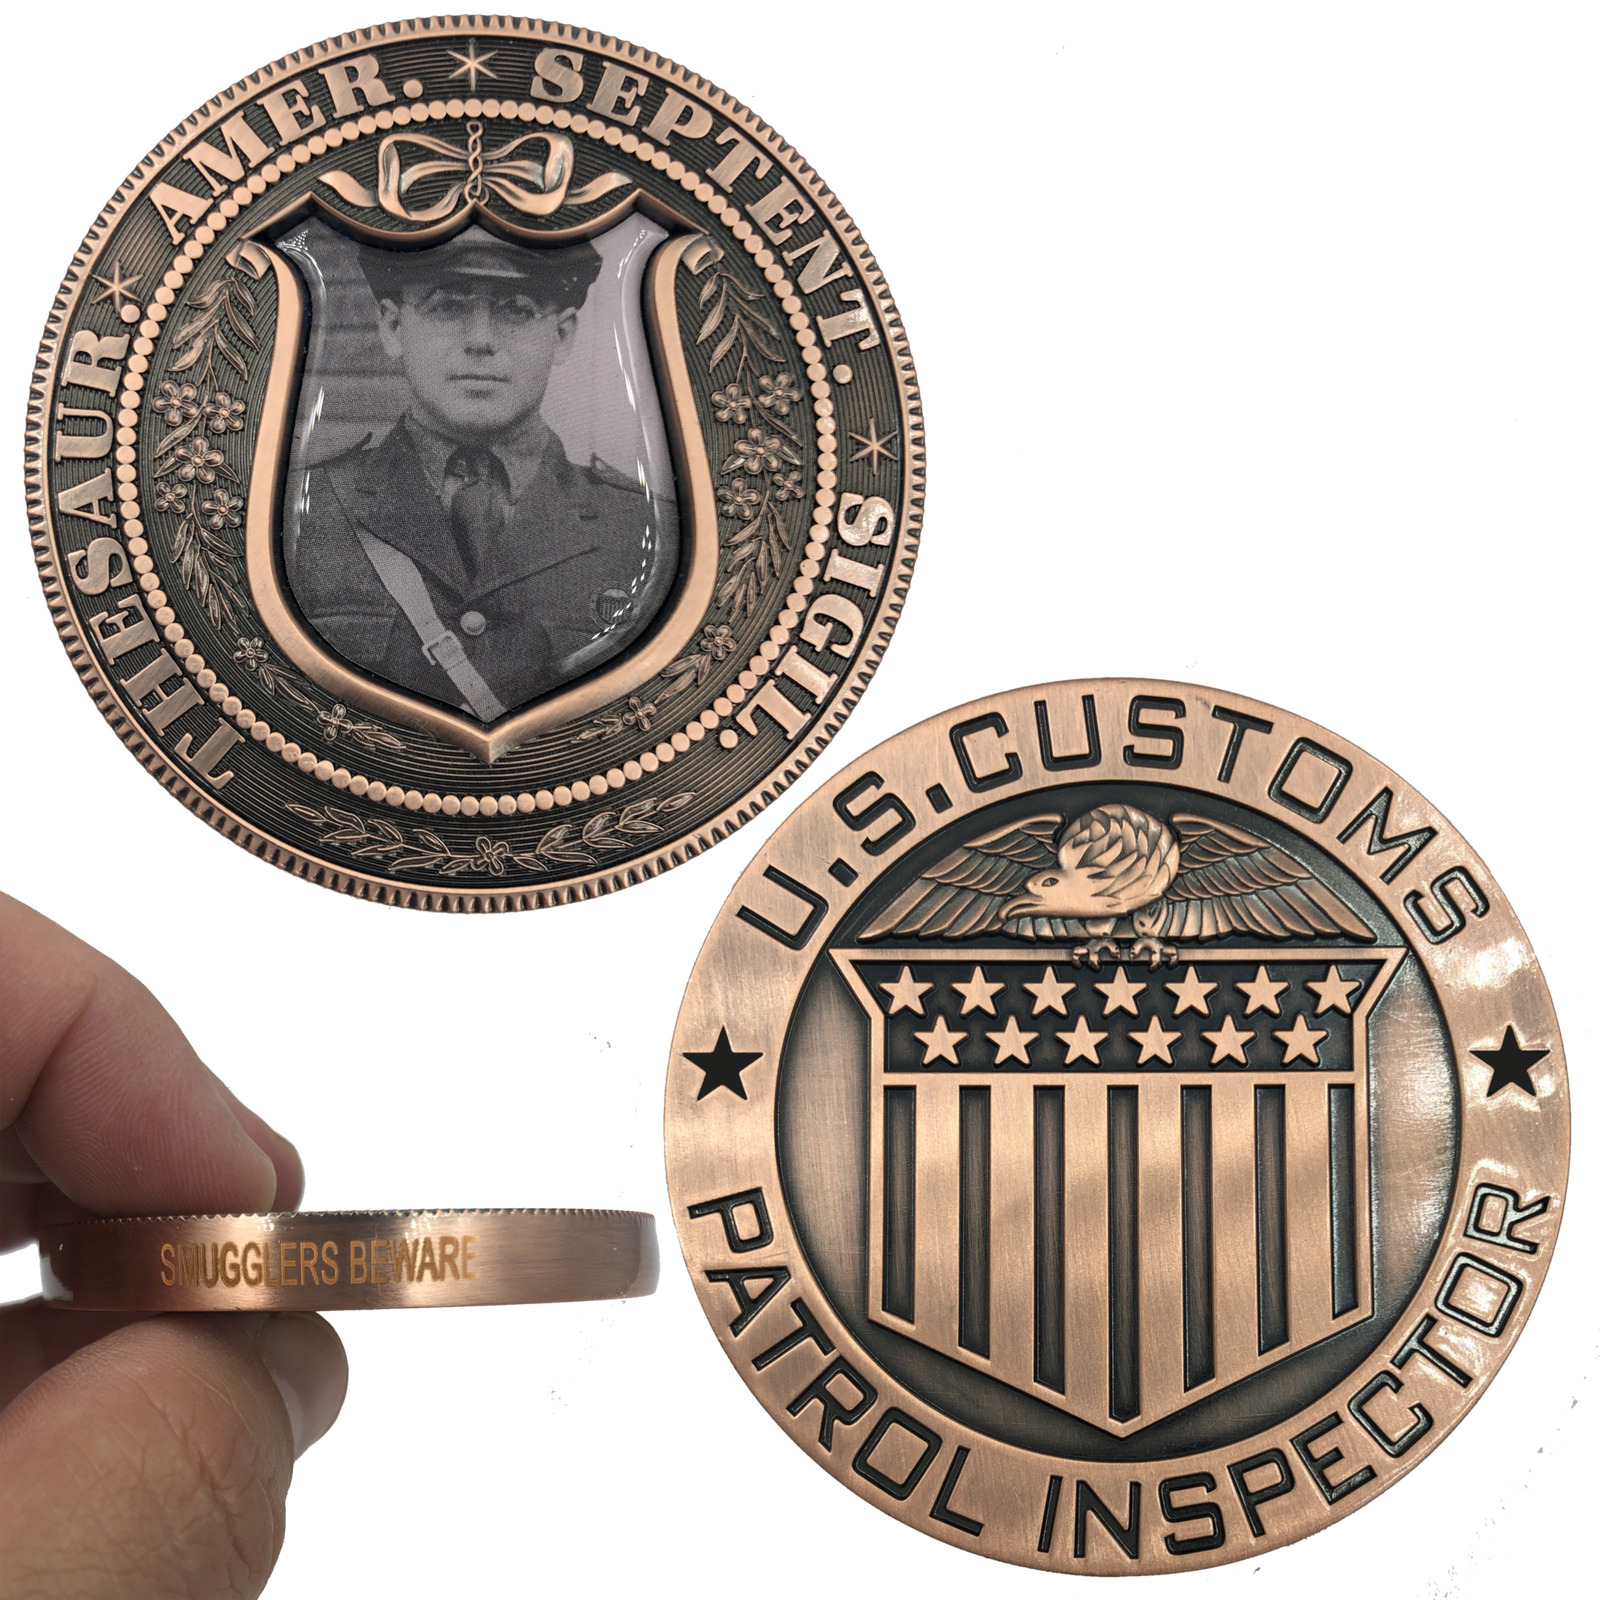 Smugglers Beware Vintage U.S. Customs Patrol Inspector Large Copper Challenge Co